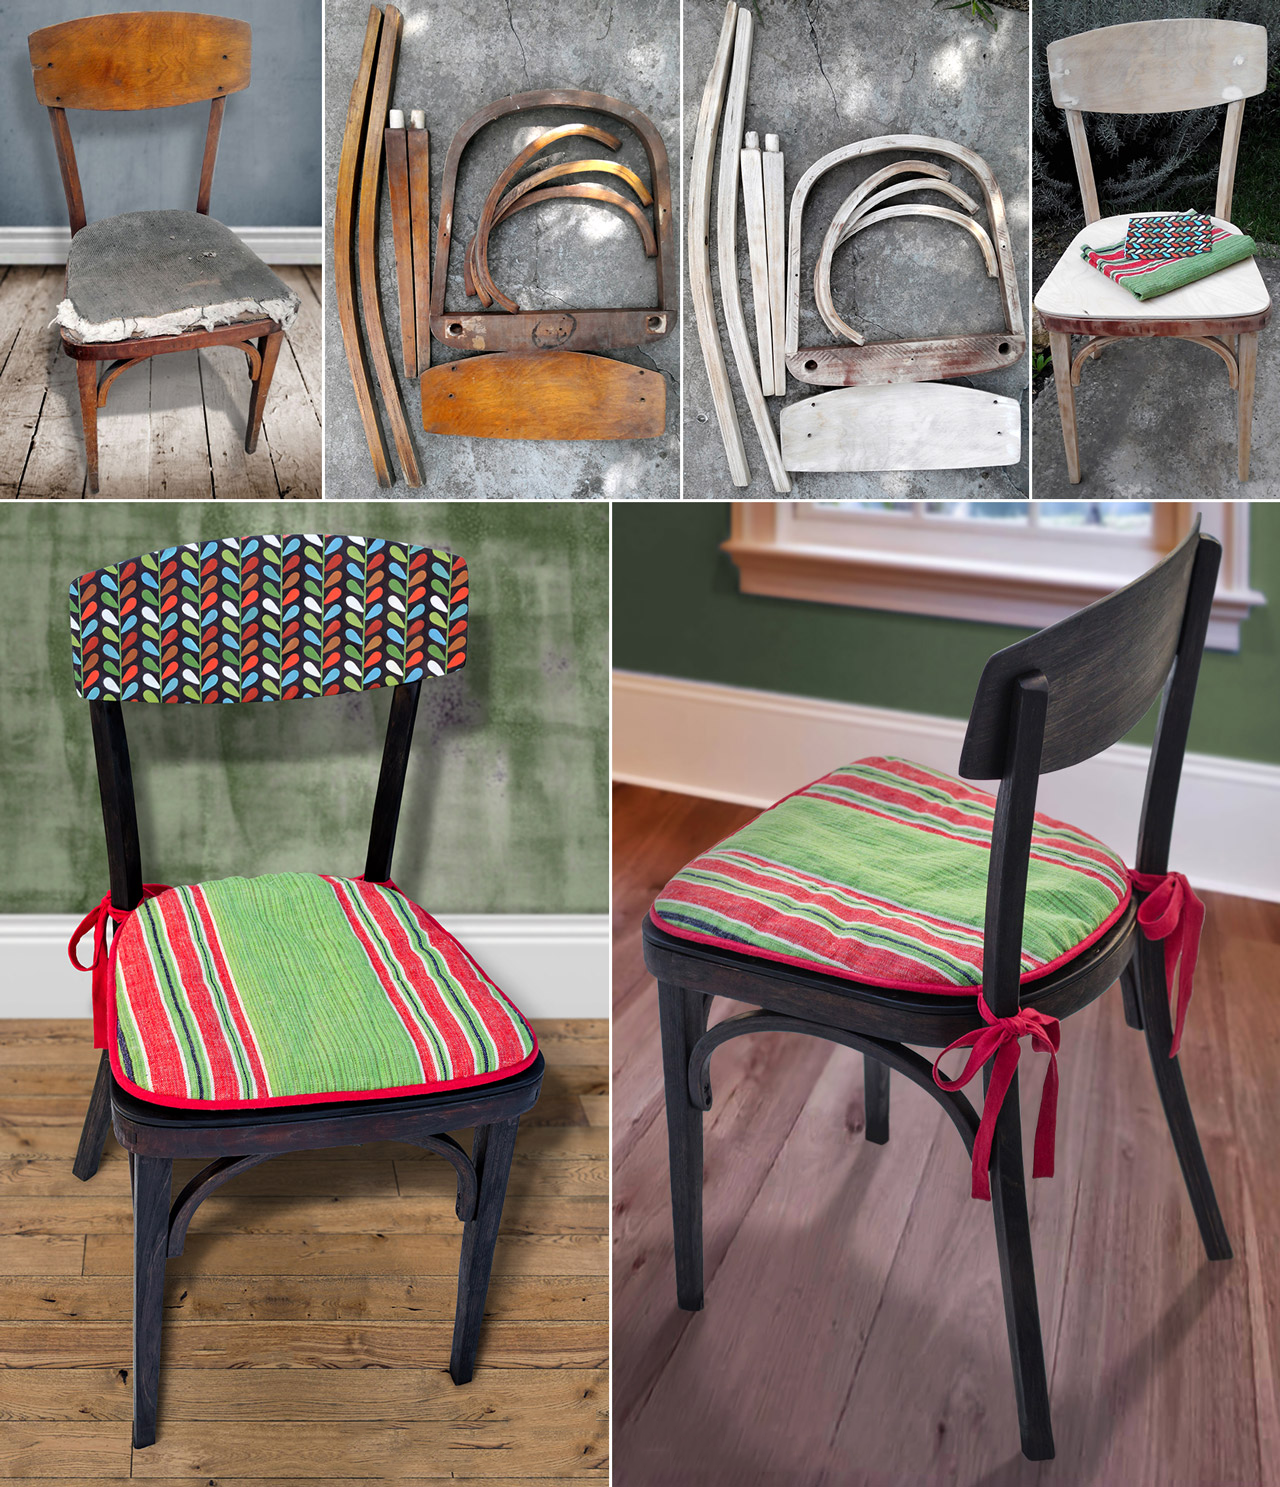 5 способов украсить стулья к новому году своими руками (новогодние декор чехлов на стулья)